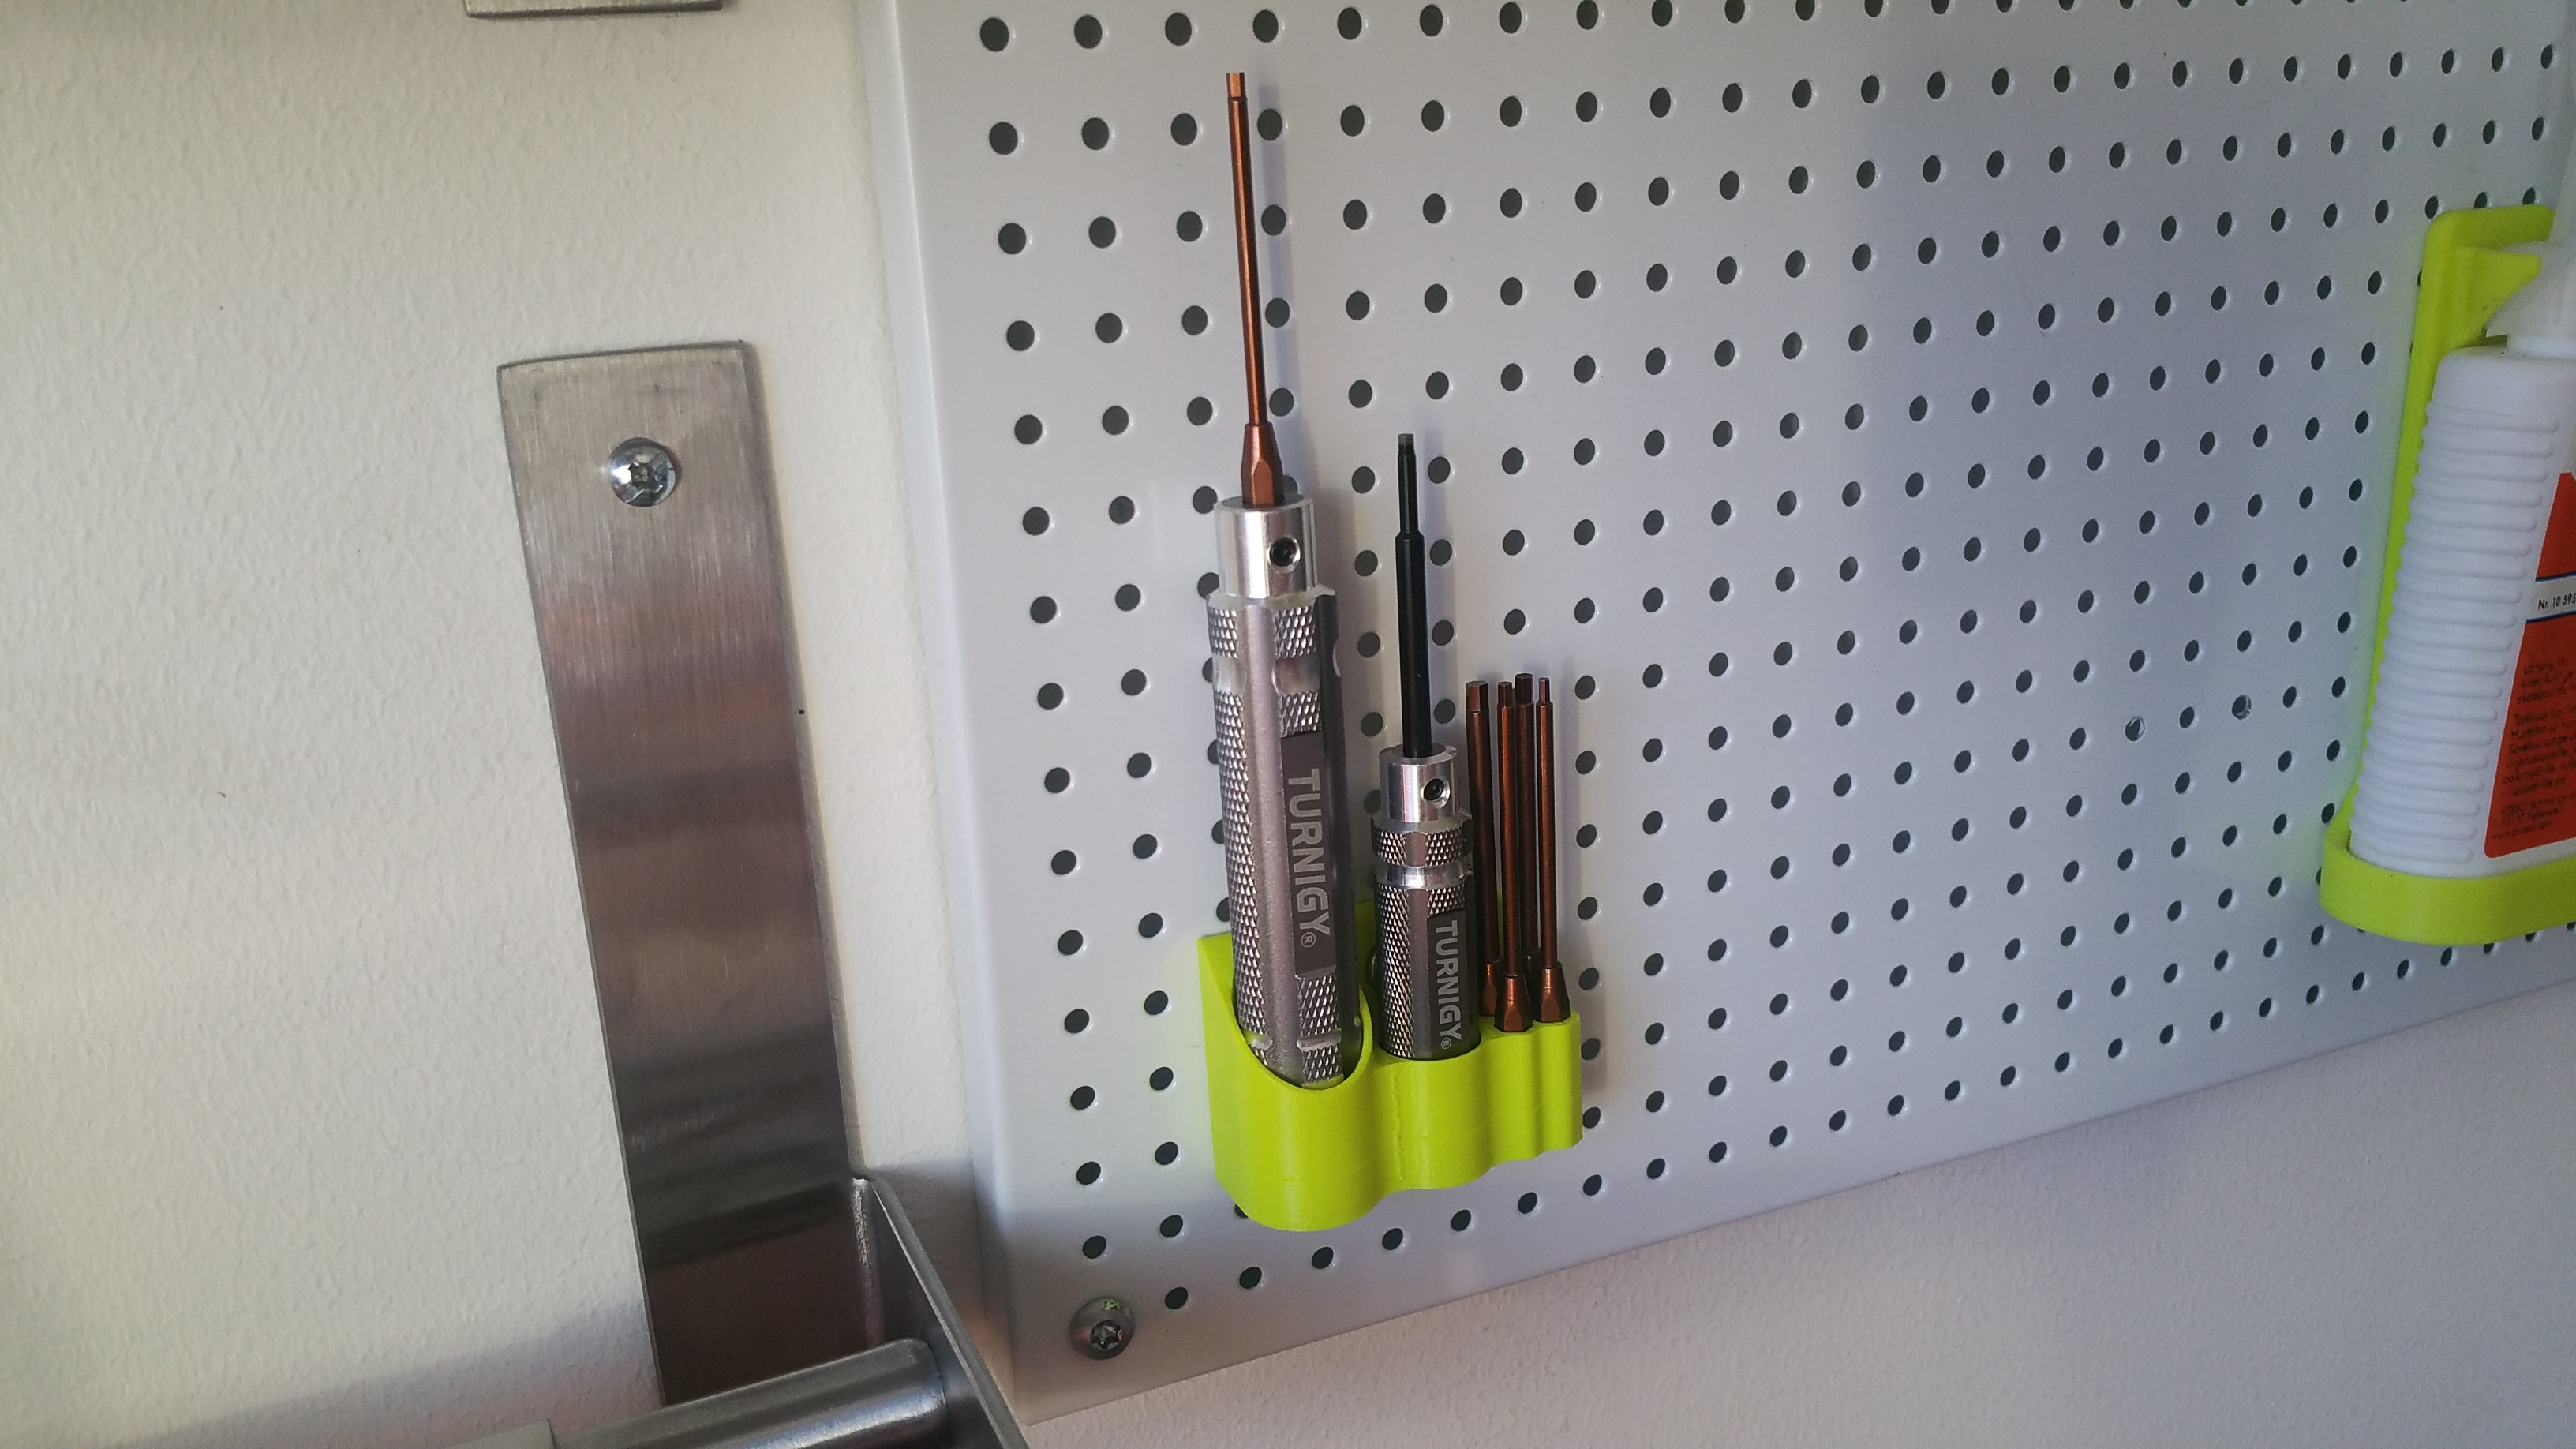 Hex screwdriver set holder